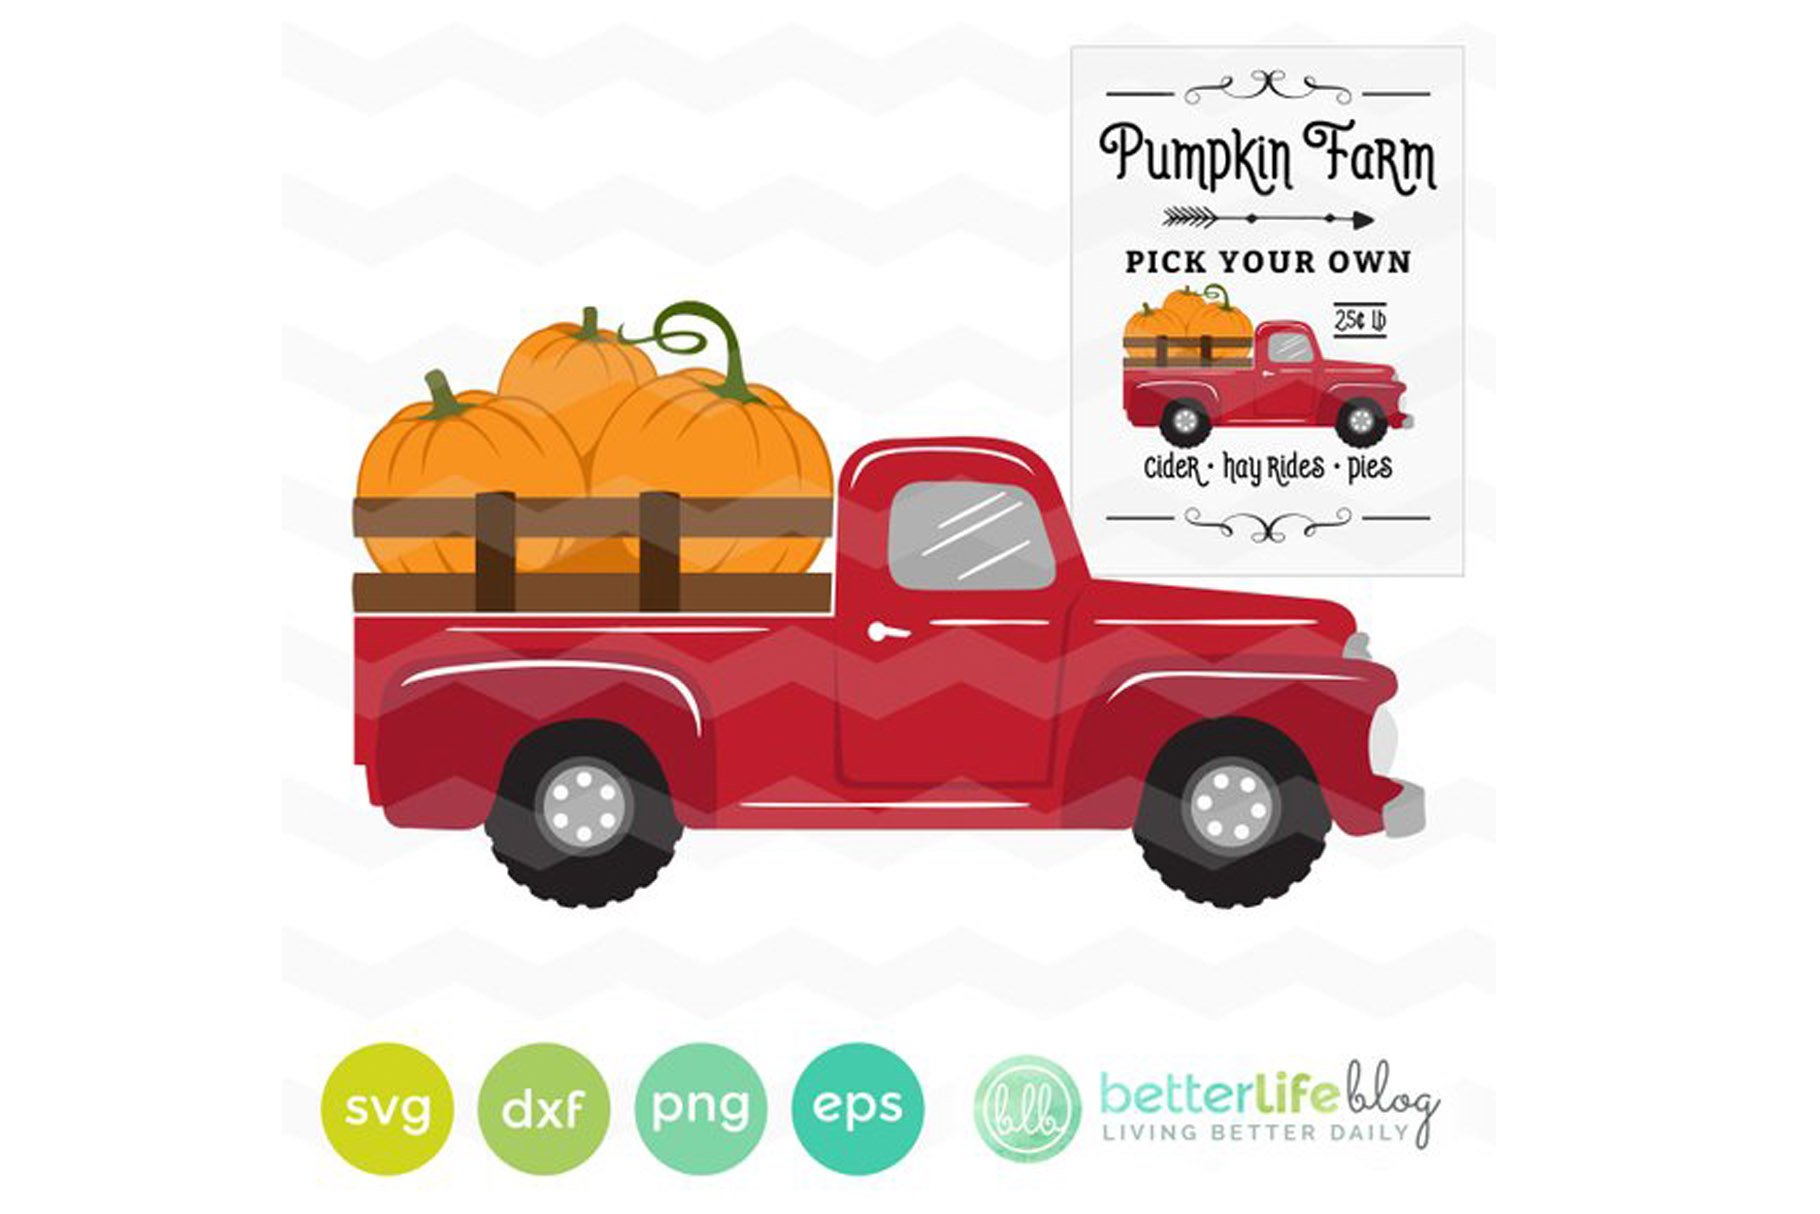 Pumpkin Truck.